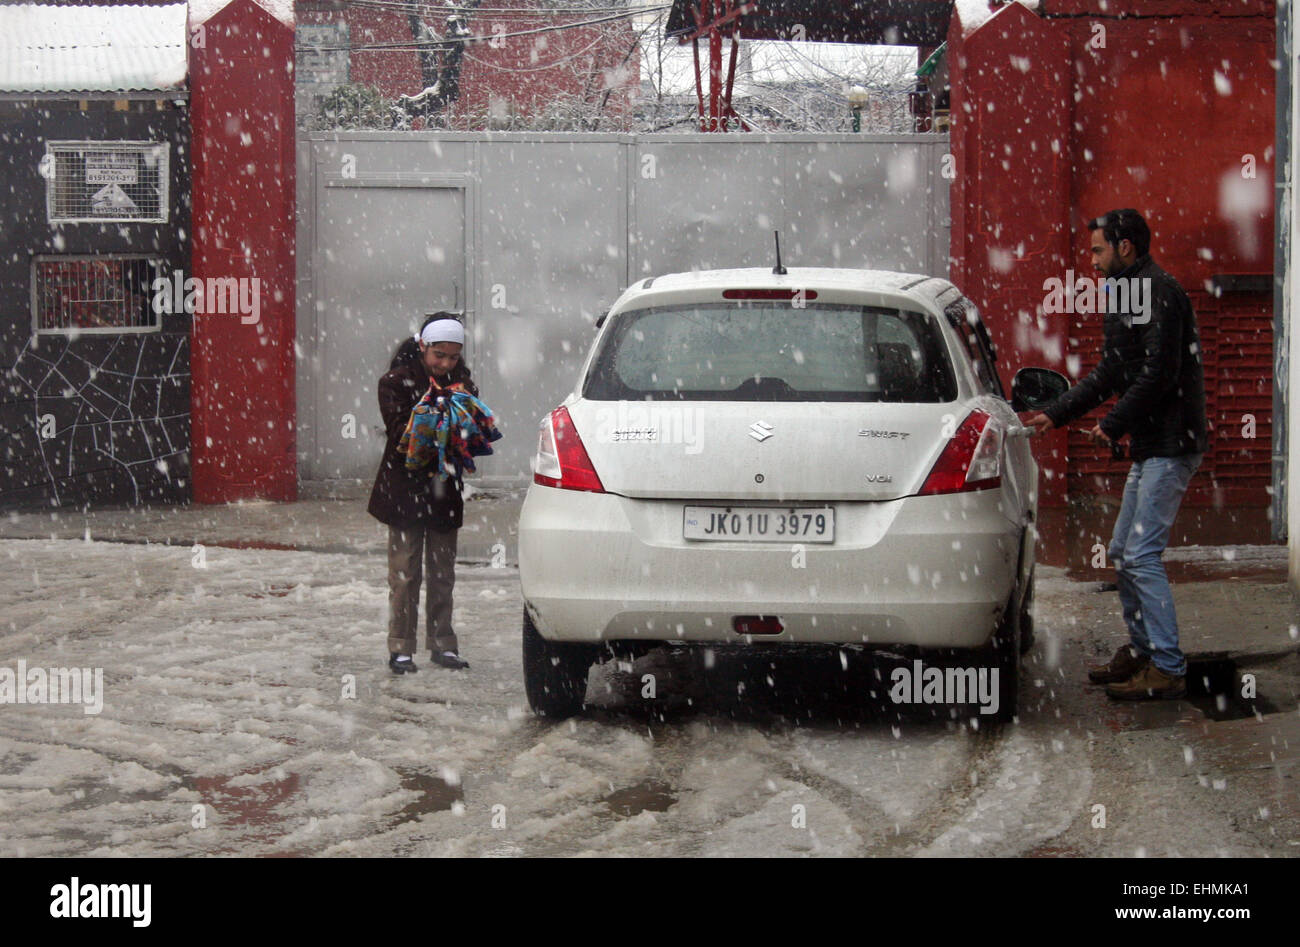 Srinagar, indische verabreicht Kaschmir. 16. März 2015. Kaschmir-Wetter: Studenten Rückgabewert zurück Wetter ihre Häuser bei frischem Regen und Schneefall gestört normales Leben ...die abrupte Veränderung führte zu einen plötzlichen Abfall der Temperatur. Wetterfrösche zurückzuführen den frischen Niederschlag auf westliche Störung. Sie haben ähnliche Wetterbedingungen für die nächsten 24 Stunden in Kaschmir und in Nachbarstaaten vorausgesagt. Der Schneefall hat auch normales Leben aus Getriebe mit Bildungseinrichtungen, die verbleibenden geschlossenen geworfen. Die meisten von den Straßen der Stadt waren naß. Bildnachweis: Sofi Suhail/Alamy Live-Nachrichten Stockfoto